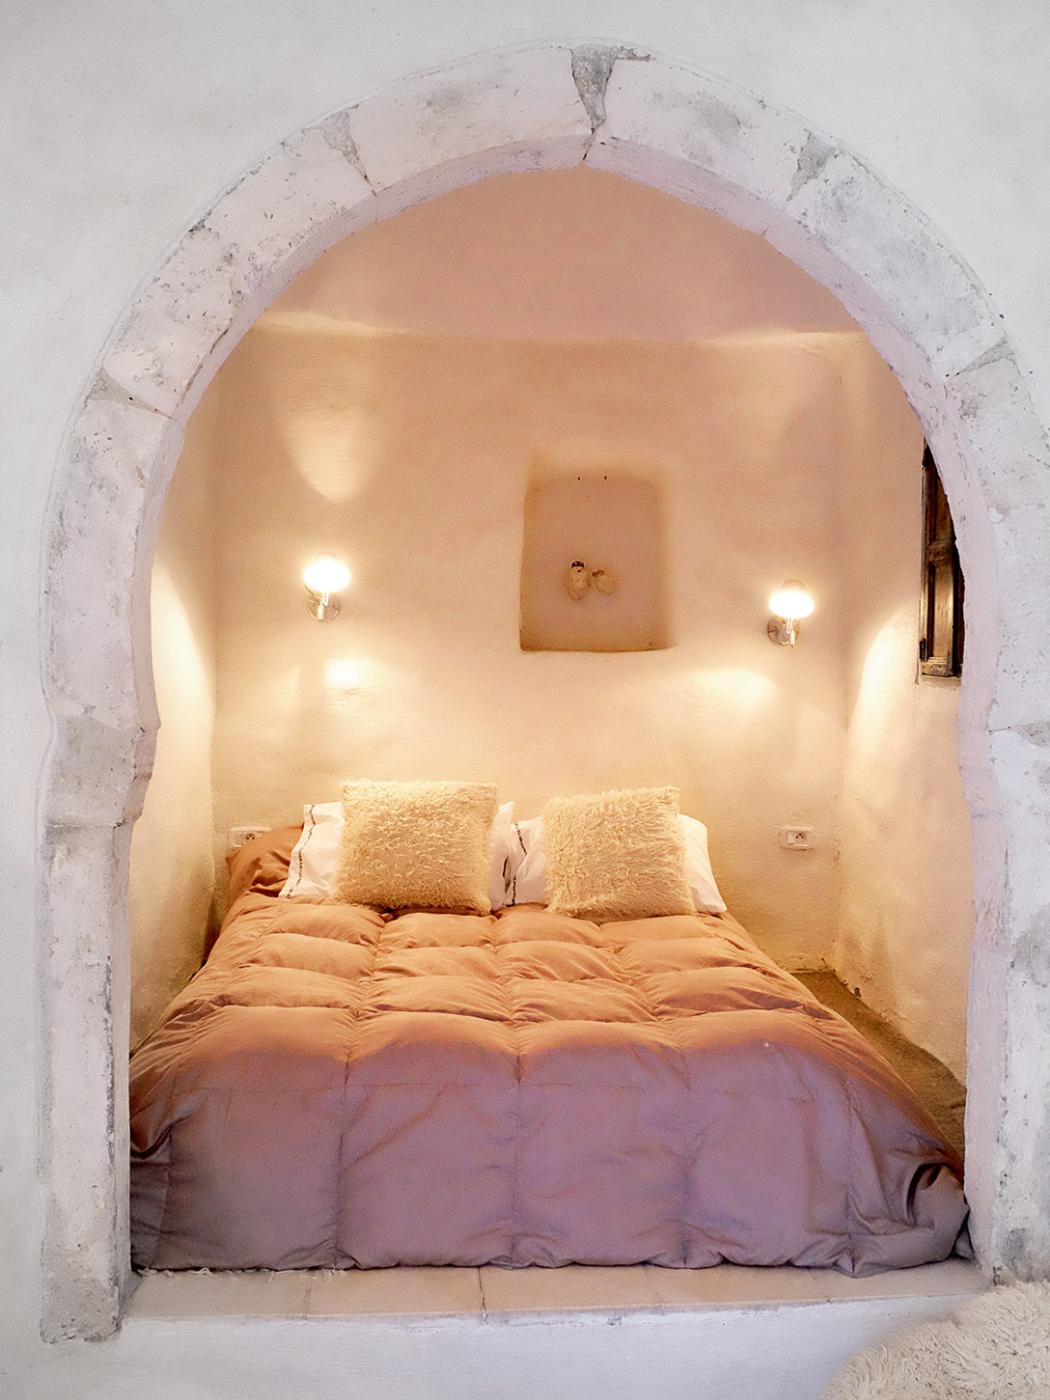  Za grubymi murami i tradycyjnymi w tunezyjskiej architekturze łukami kryją się zawsze chłodne wnętrza. Fot. Anna Janowska